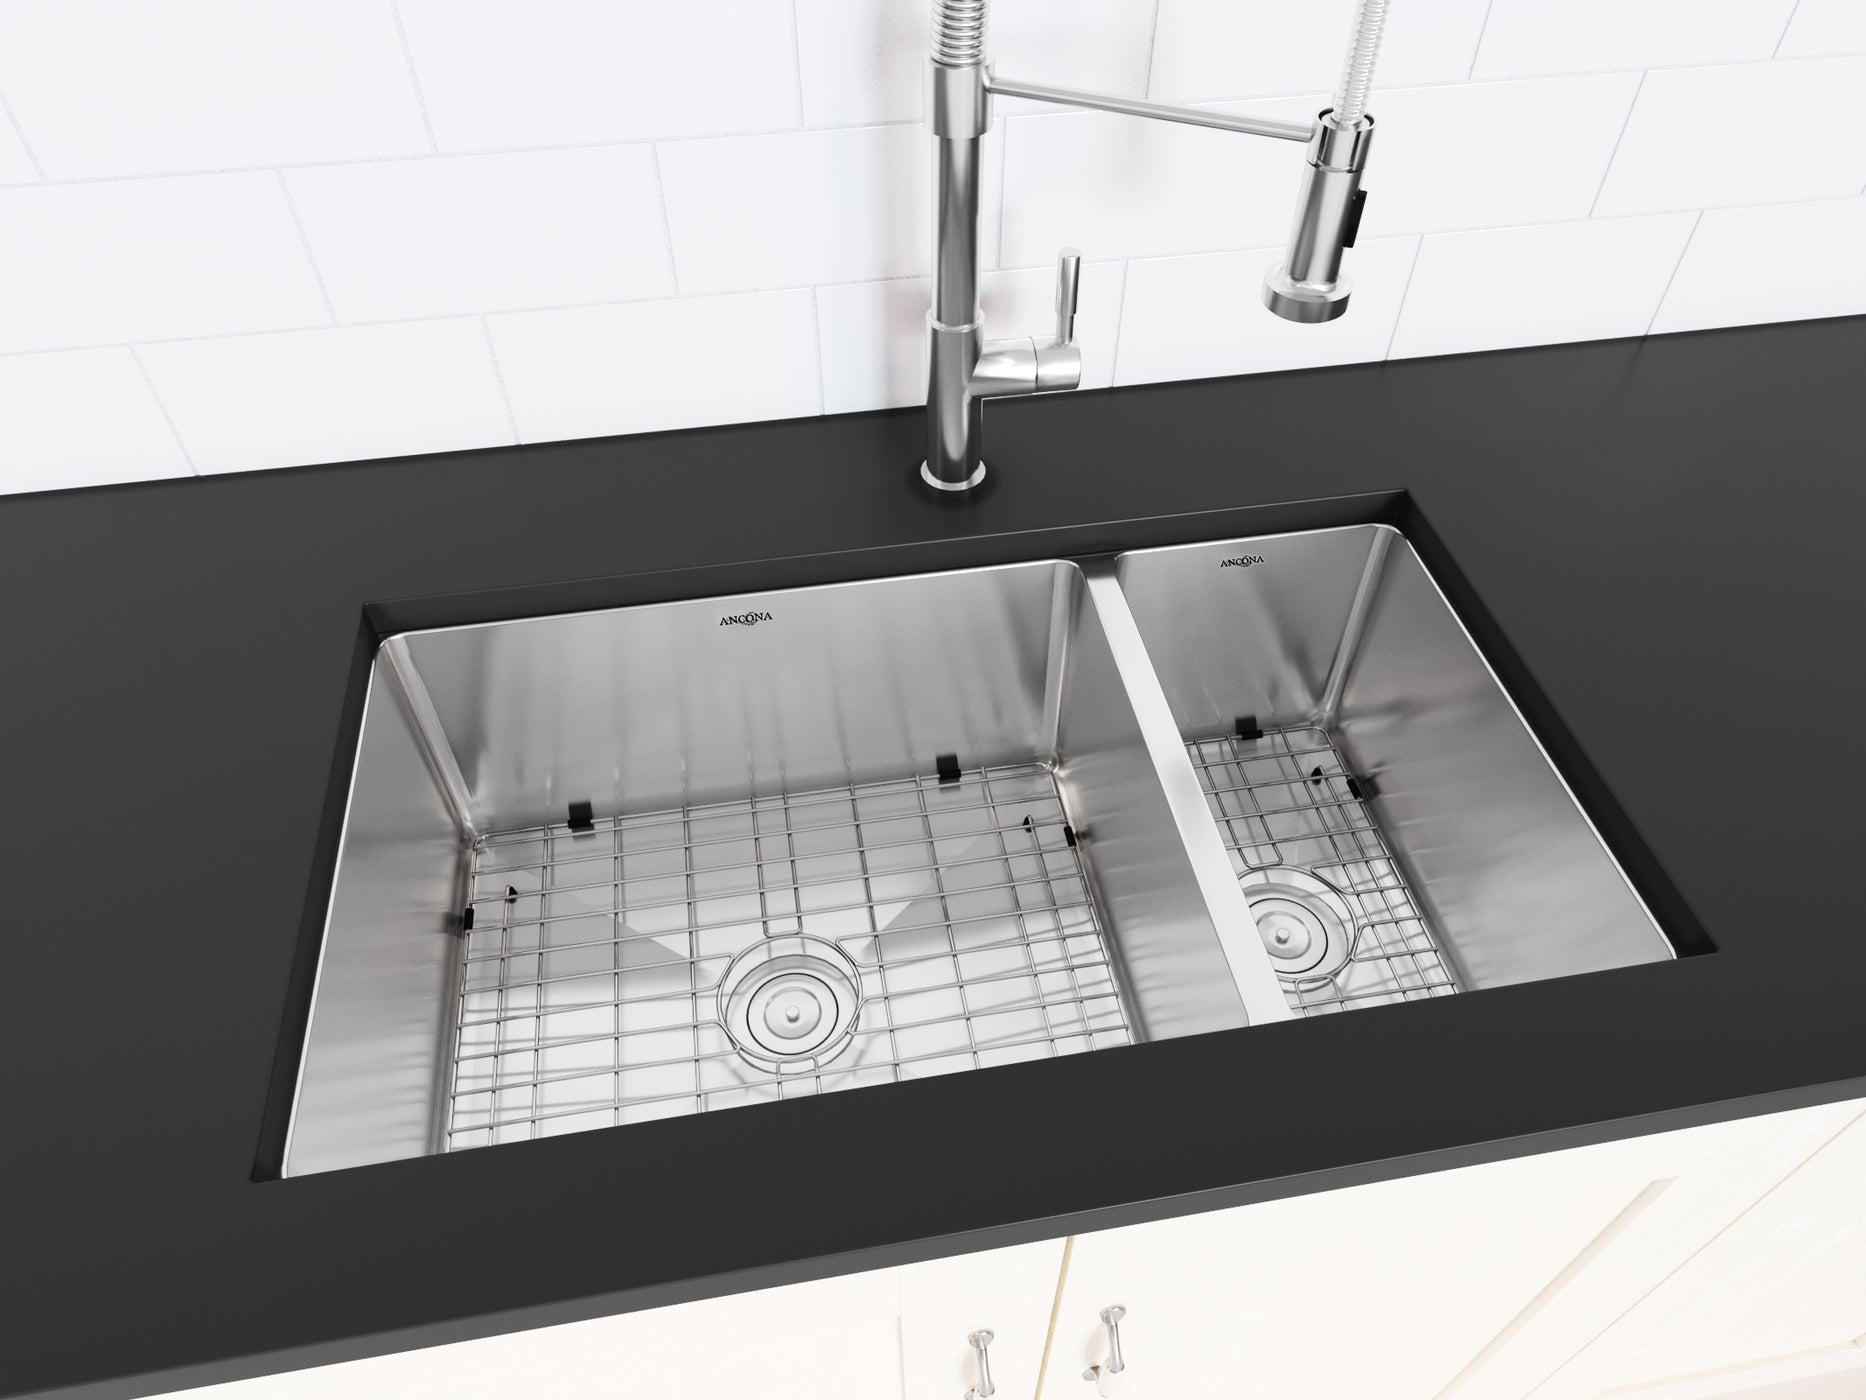 70/30 kitchen sink undermount